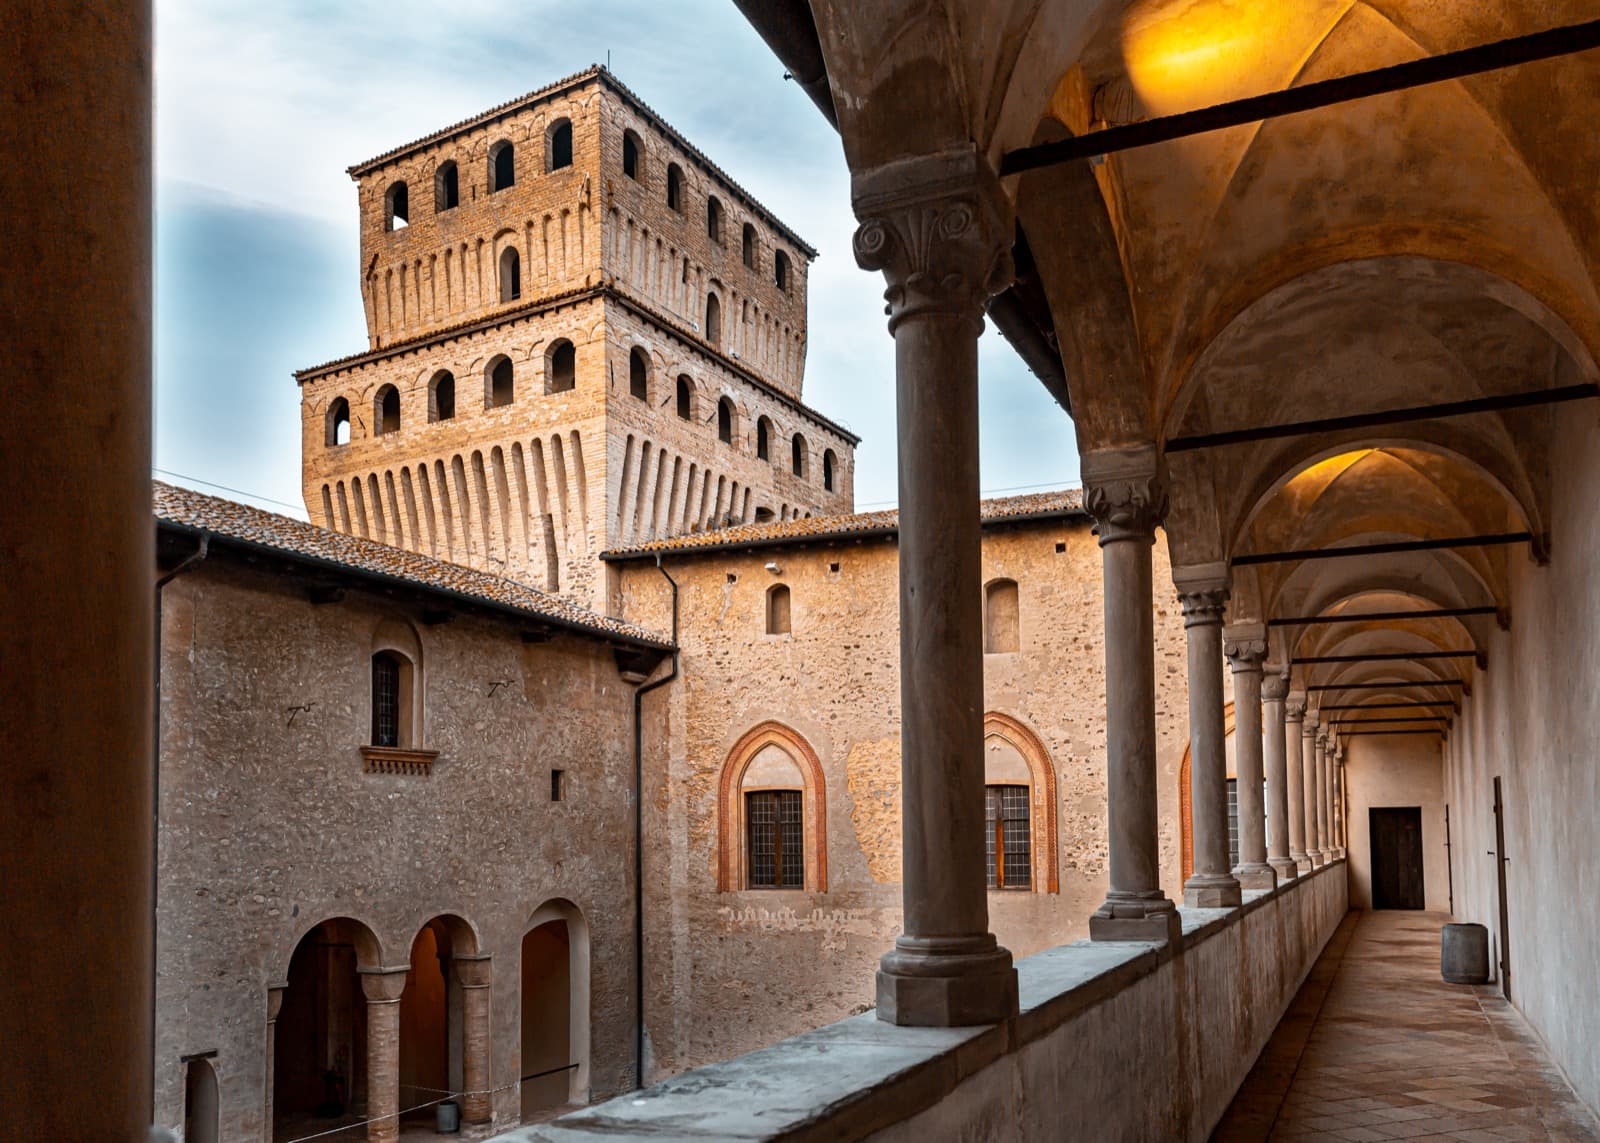 Langhirano (Parma), Castello di Torrechiara | Credit: Floriana Avellino, via Shutterstock